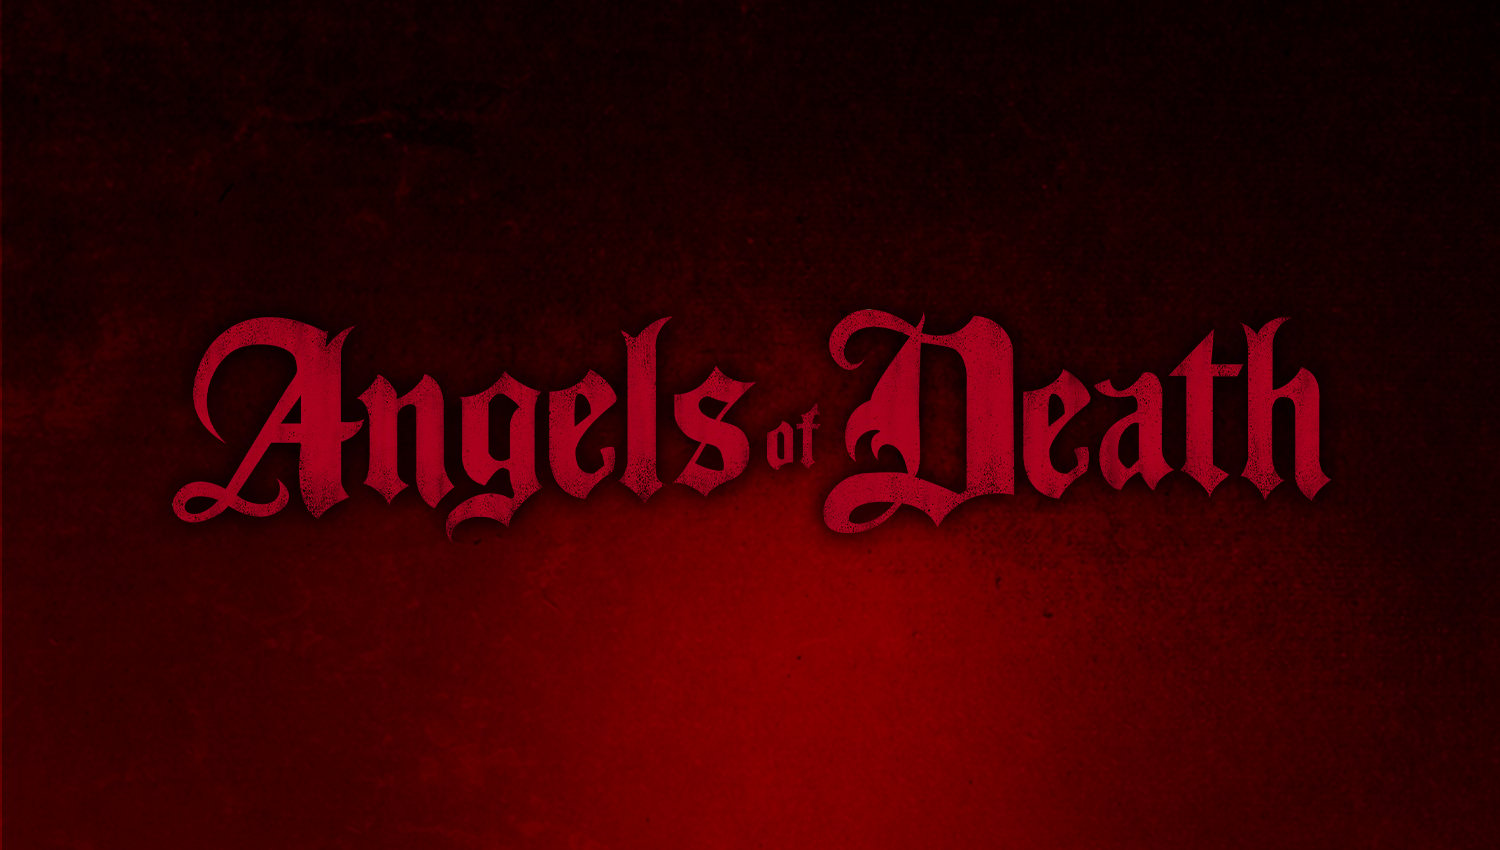 Angels of Death - Warhammer Community